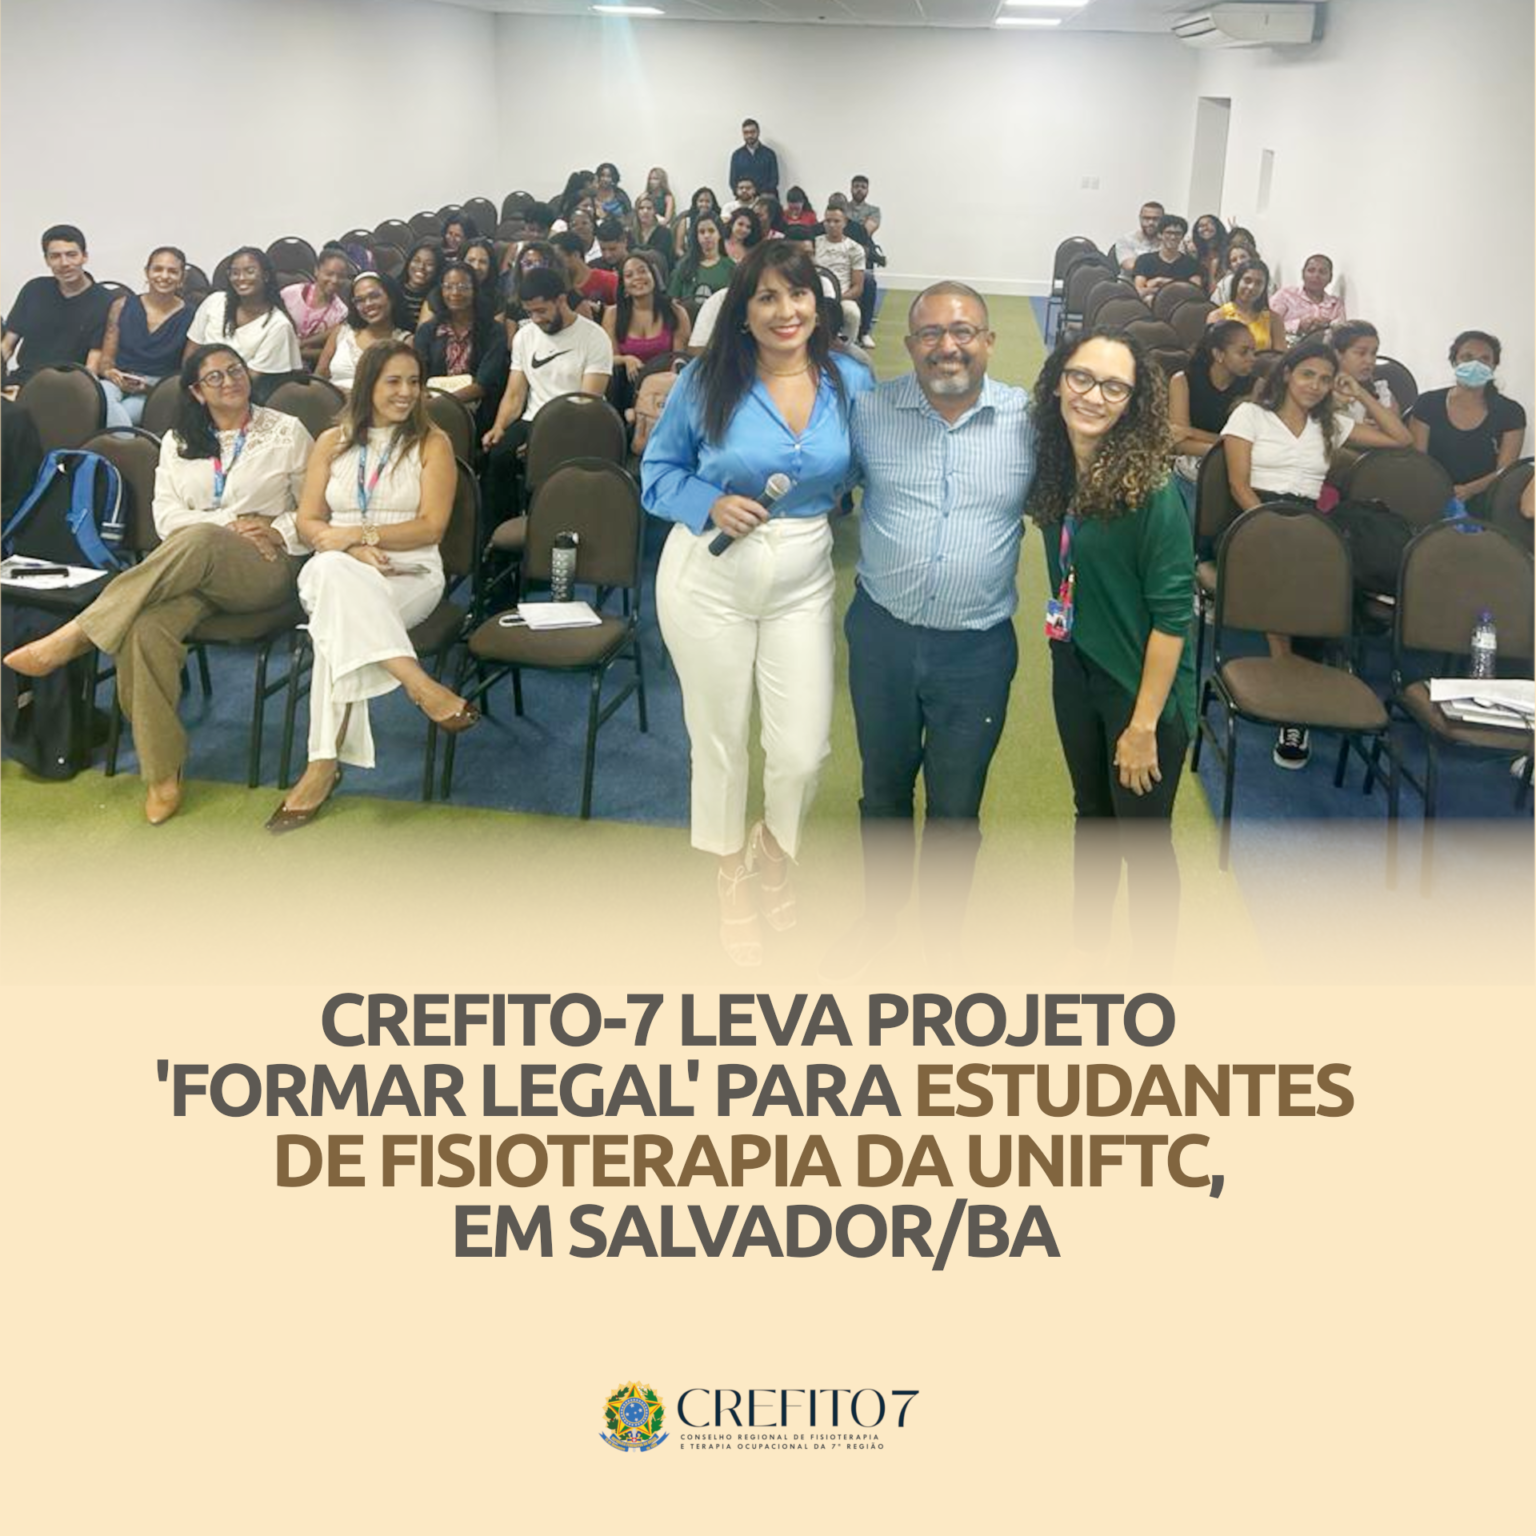 CREFITO-7 LEVA PROJETO 'FORMAR LEGAL' PARA ESTUDANTES DE FISIOTERAPIA DA UNIFTC